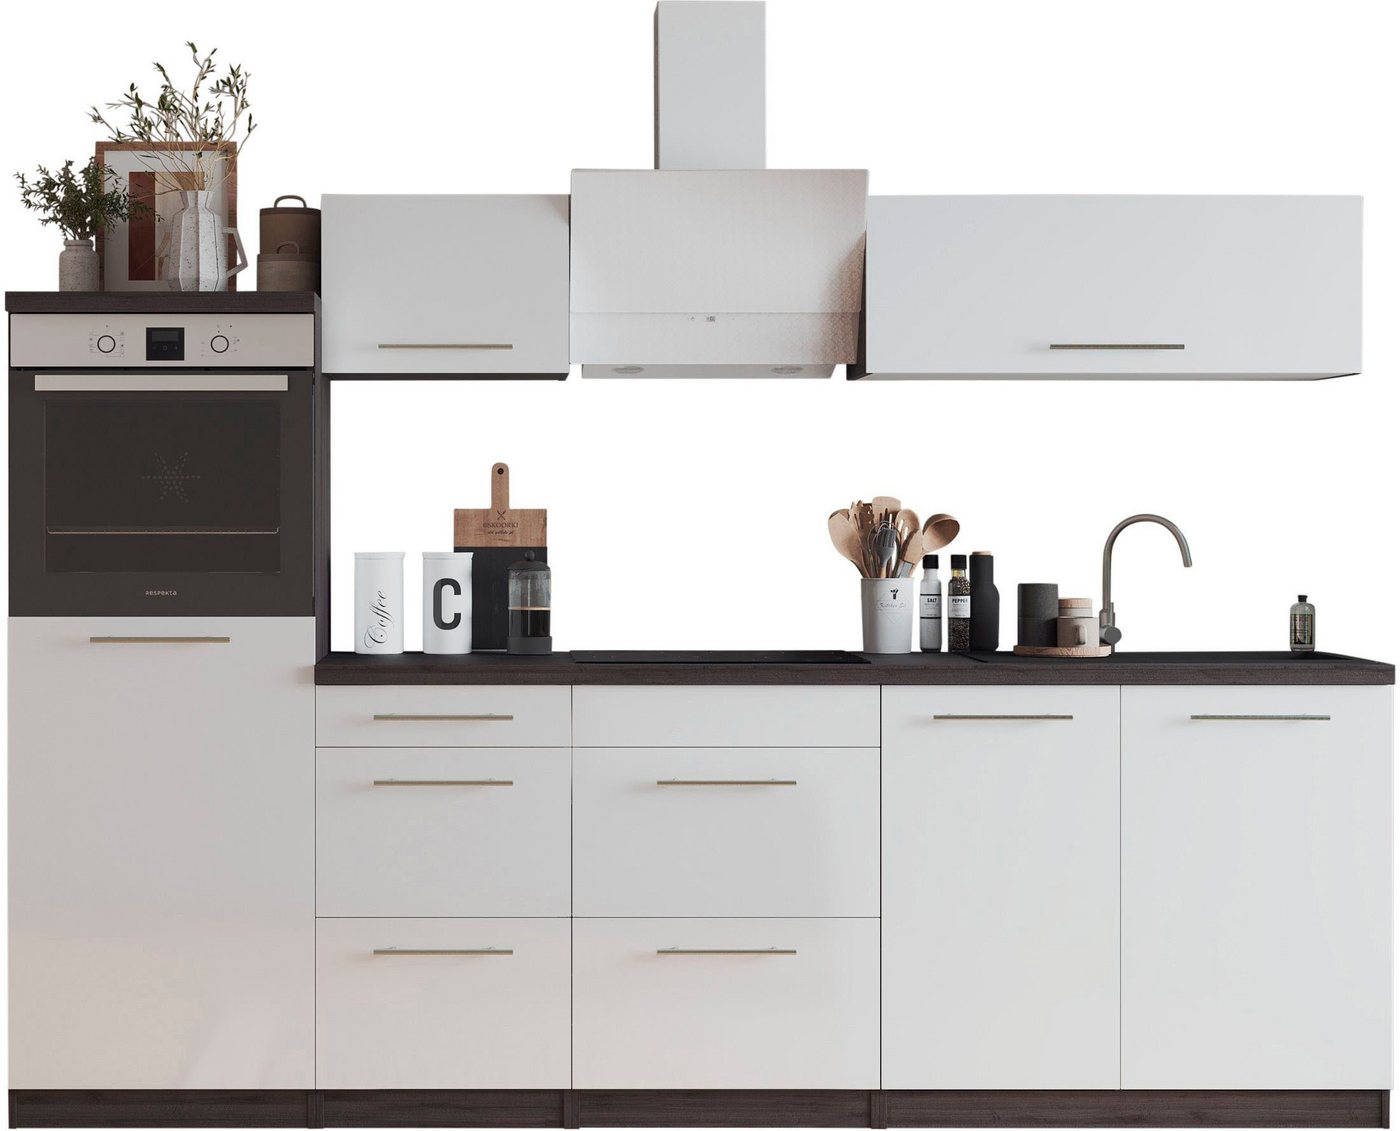 RESPEKTA Küche Amanda, Breite 270 cm, mit Soft-Close, exklusiver Konfiguration für OTTO von RESPEKTA